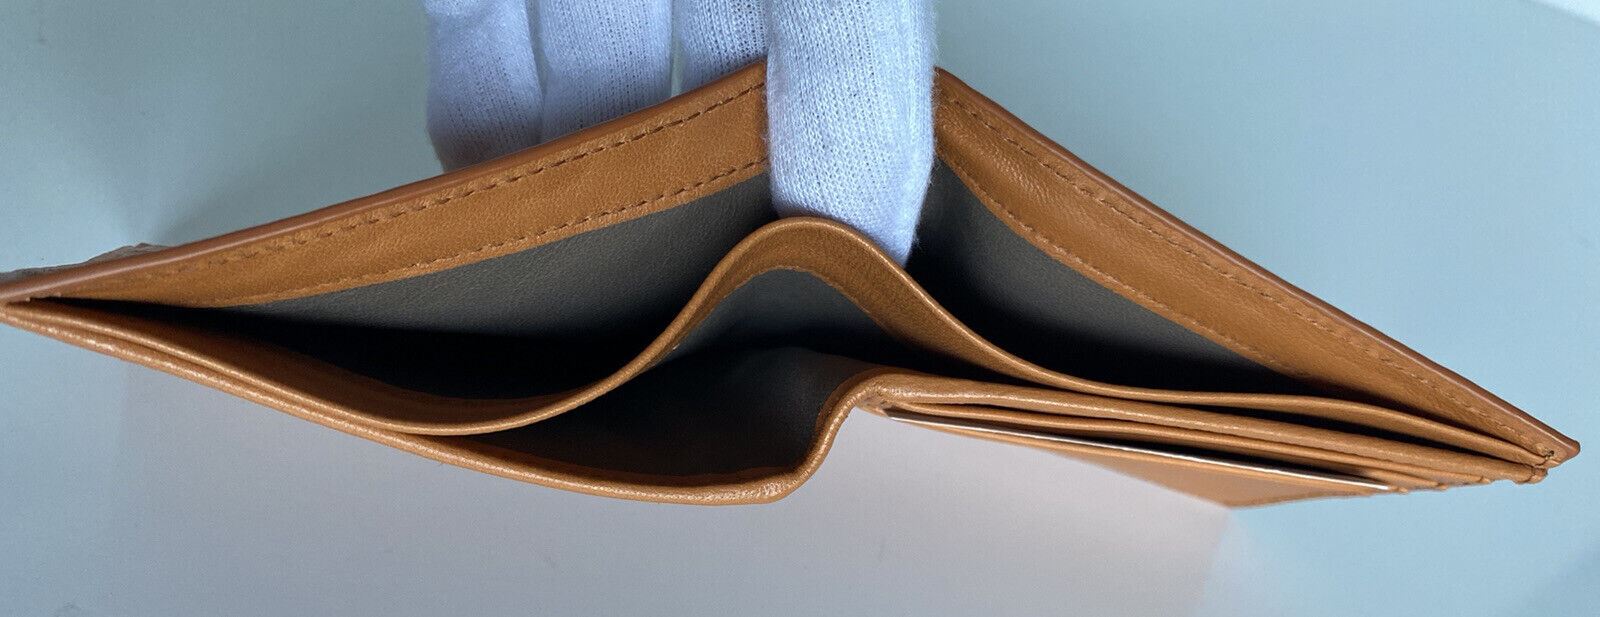 NWT Bottega Veneta Intrecciato Leather Clay Bi-fold Wallet 196207 Italy